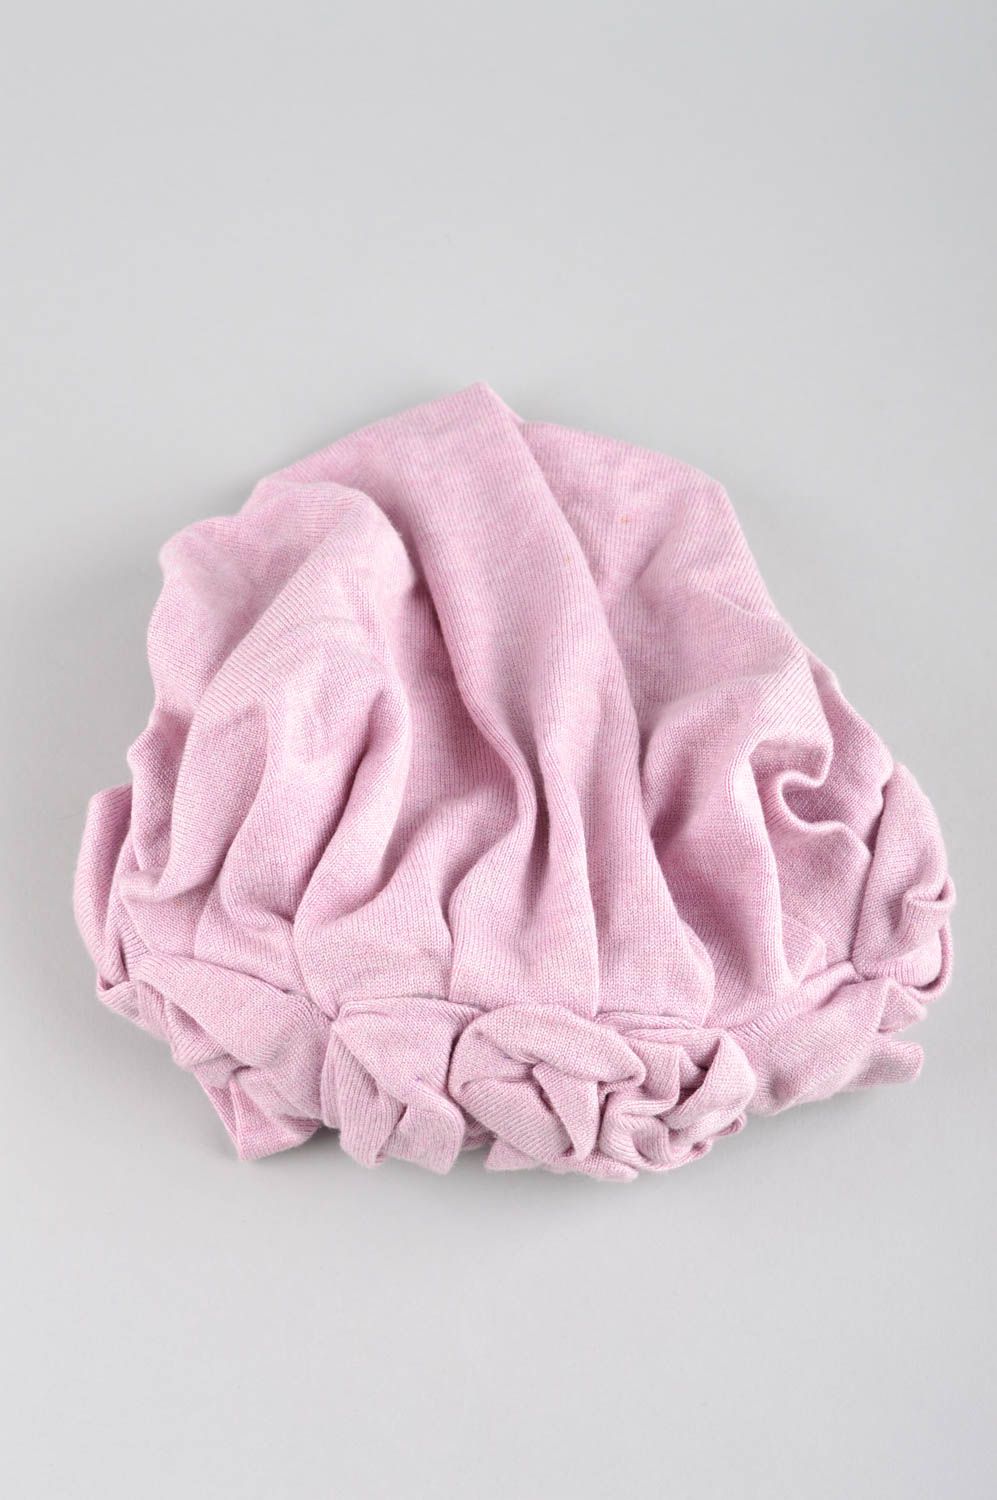 Зимняя женская шапка ручной работы зимняя шапка розовая головной убор красивый фото 4